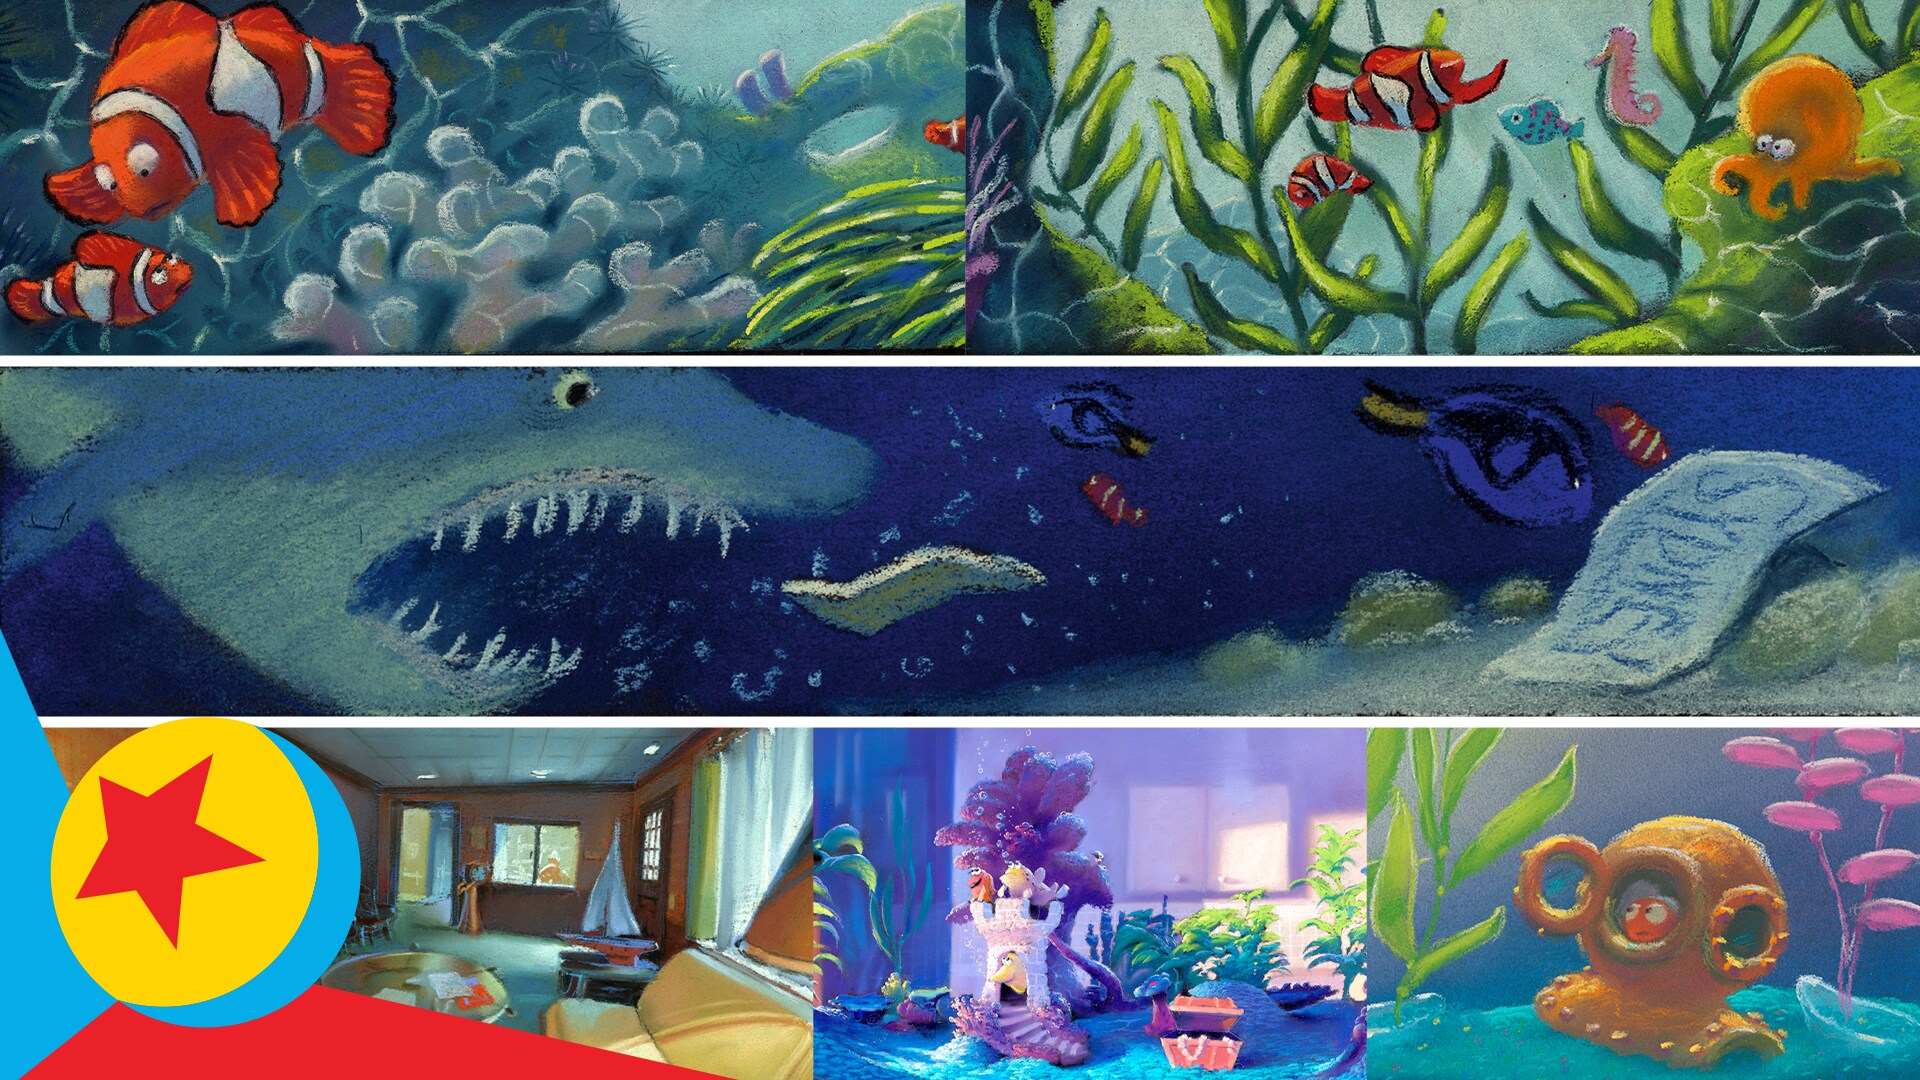 Journey Into Finding Nemo's Color Script | Color Script Chronicles | Pixar